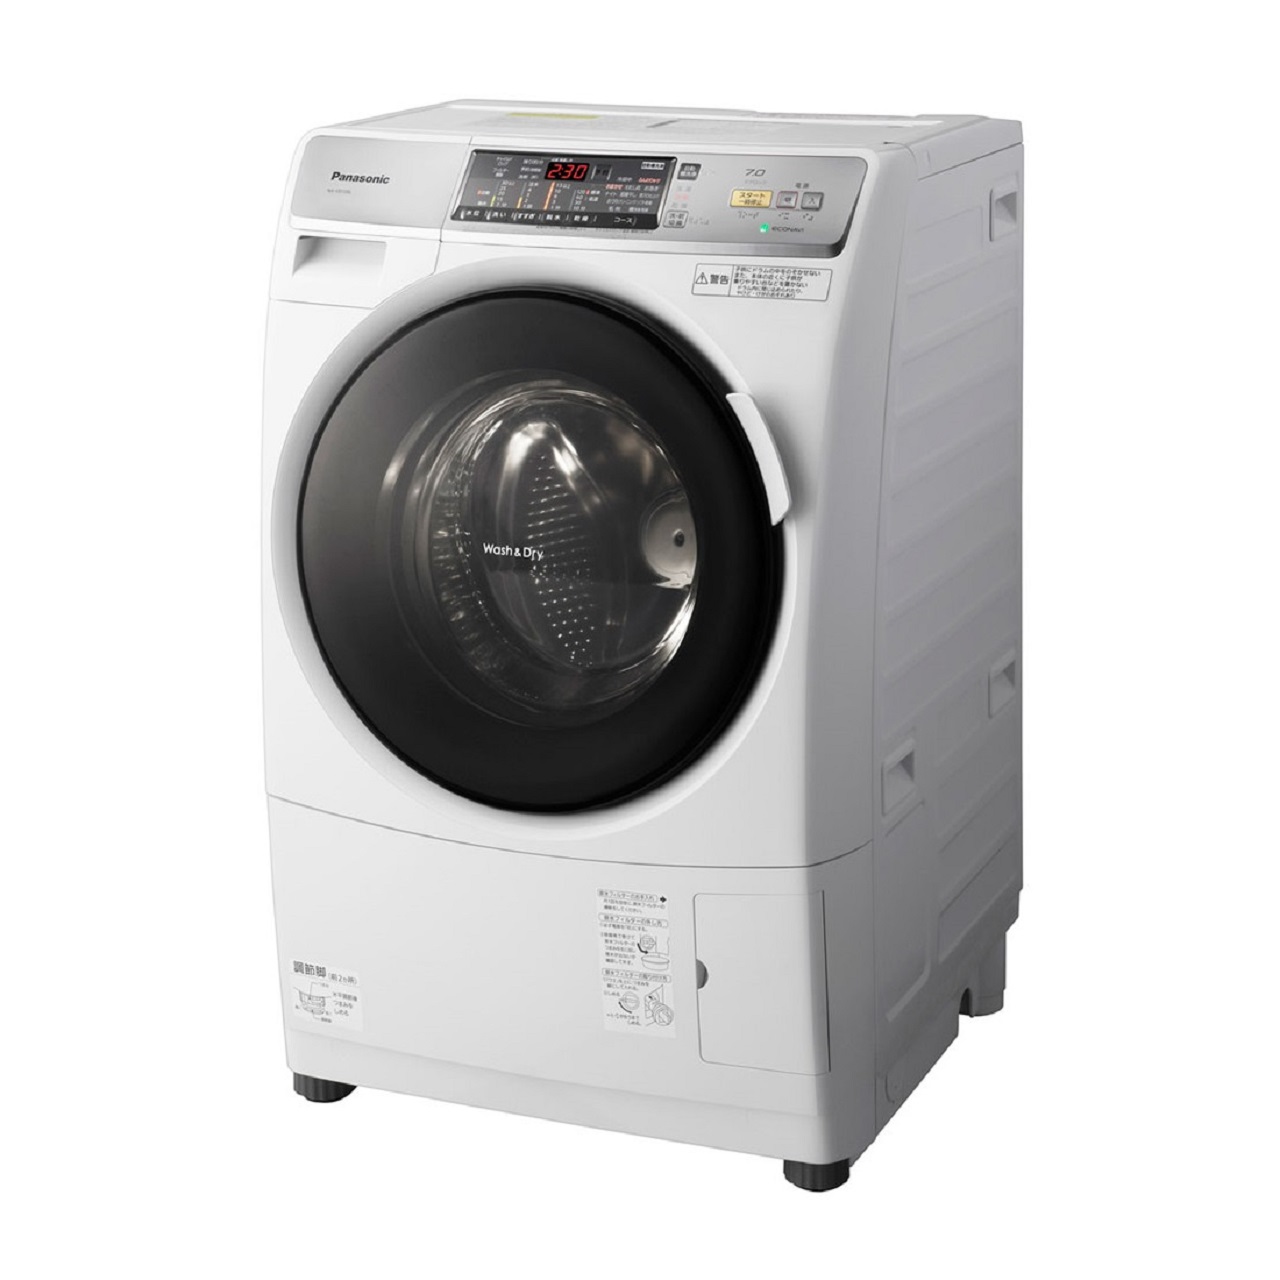 パナソニック プチドラムNA-VD130Lななめドラム洗濯乾燥機